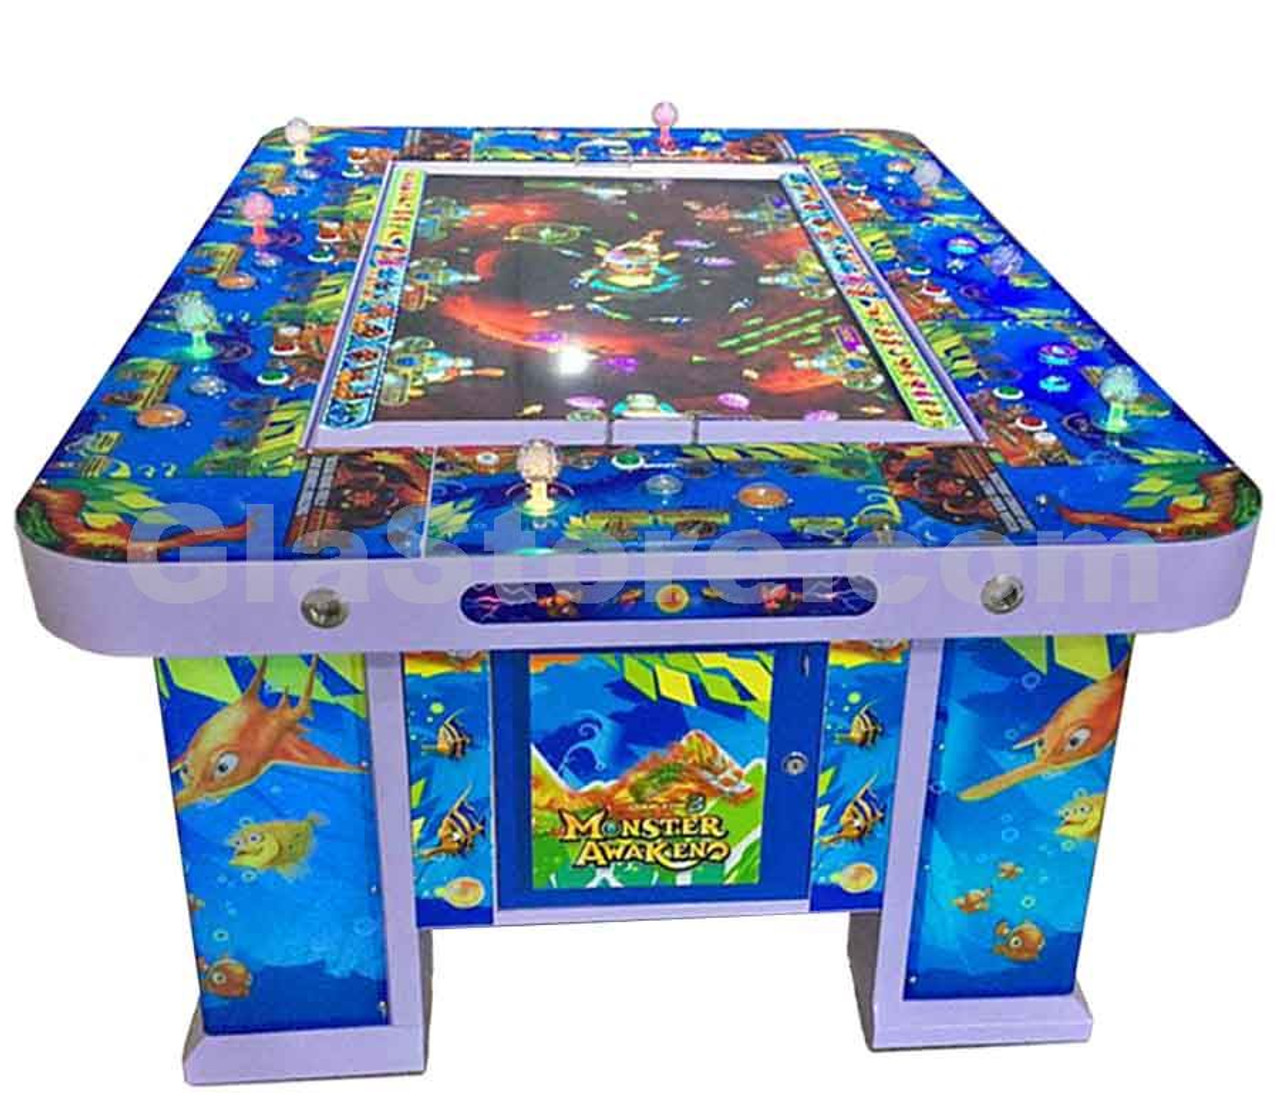 ocean king 2 arcade game tips